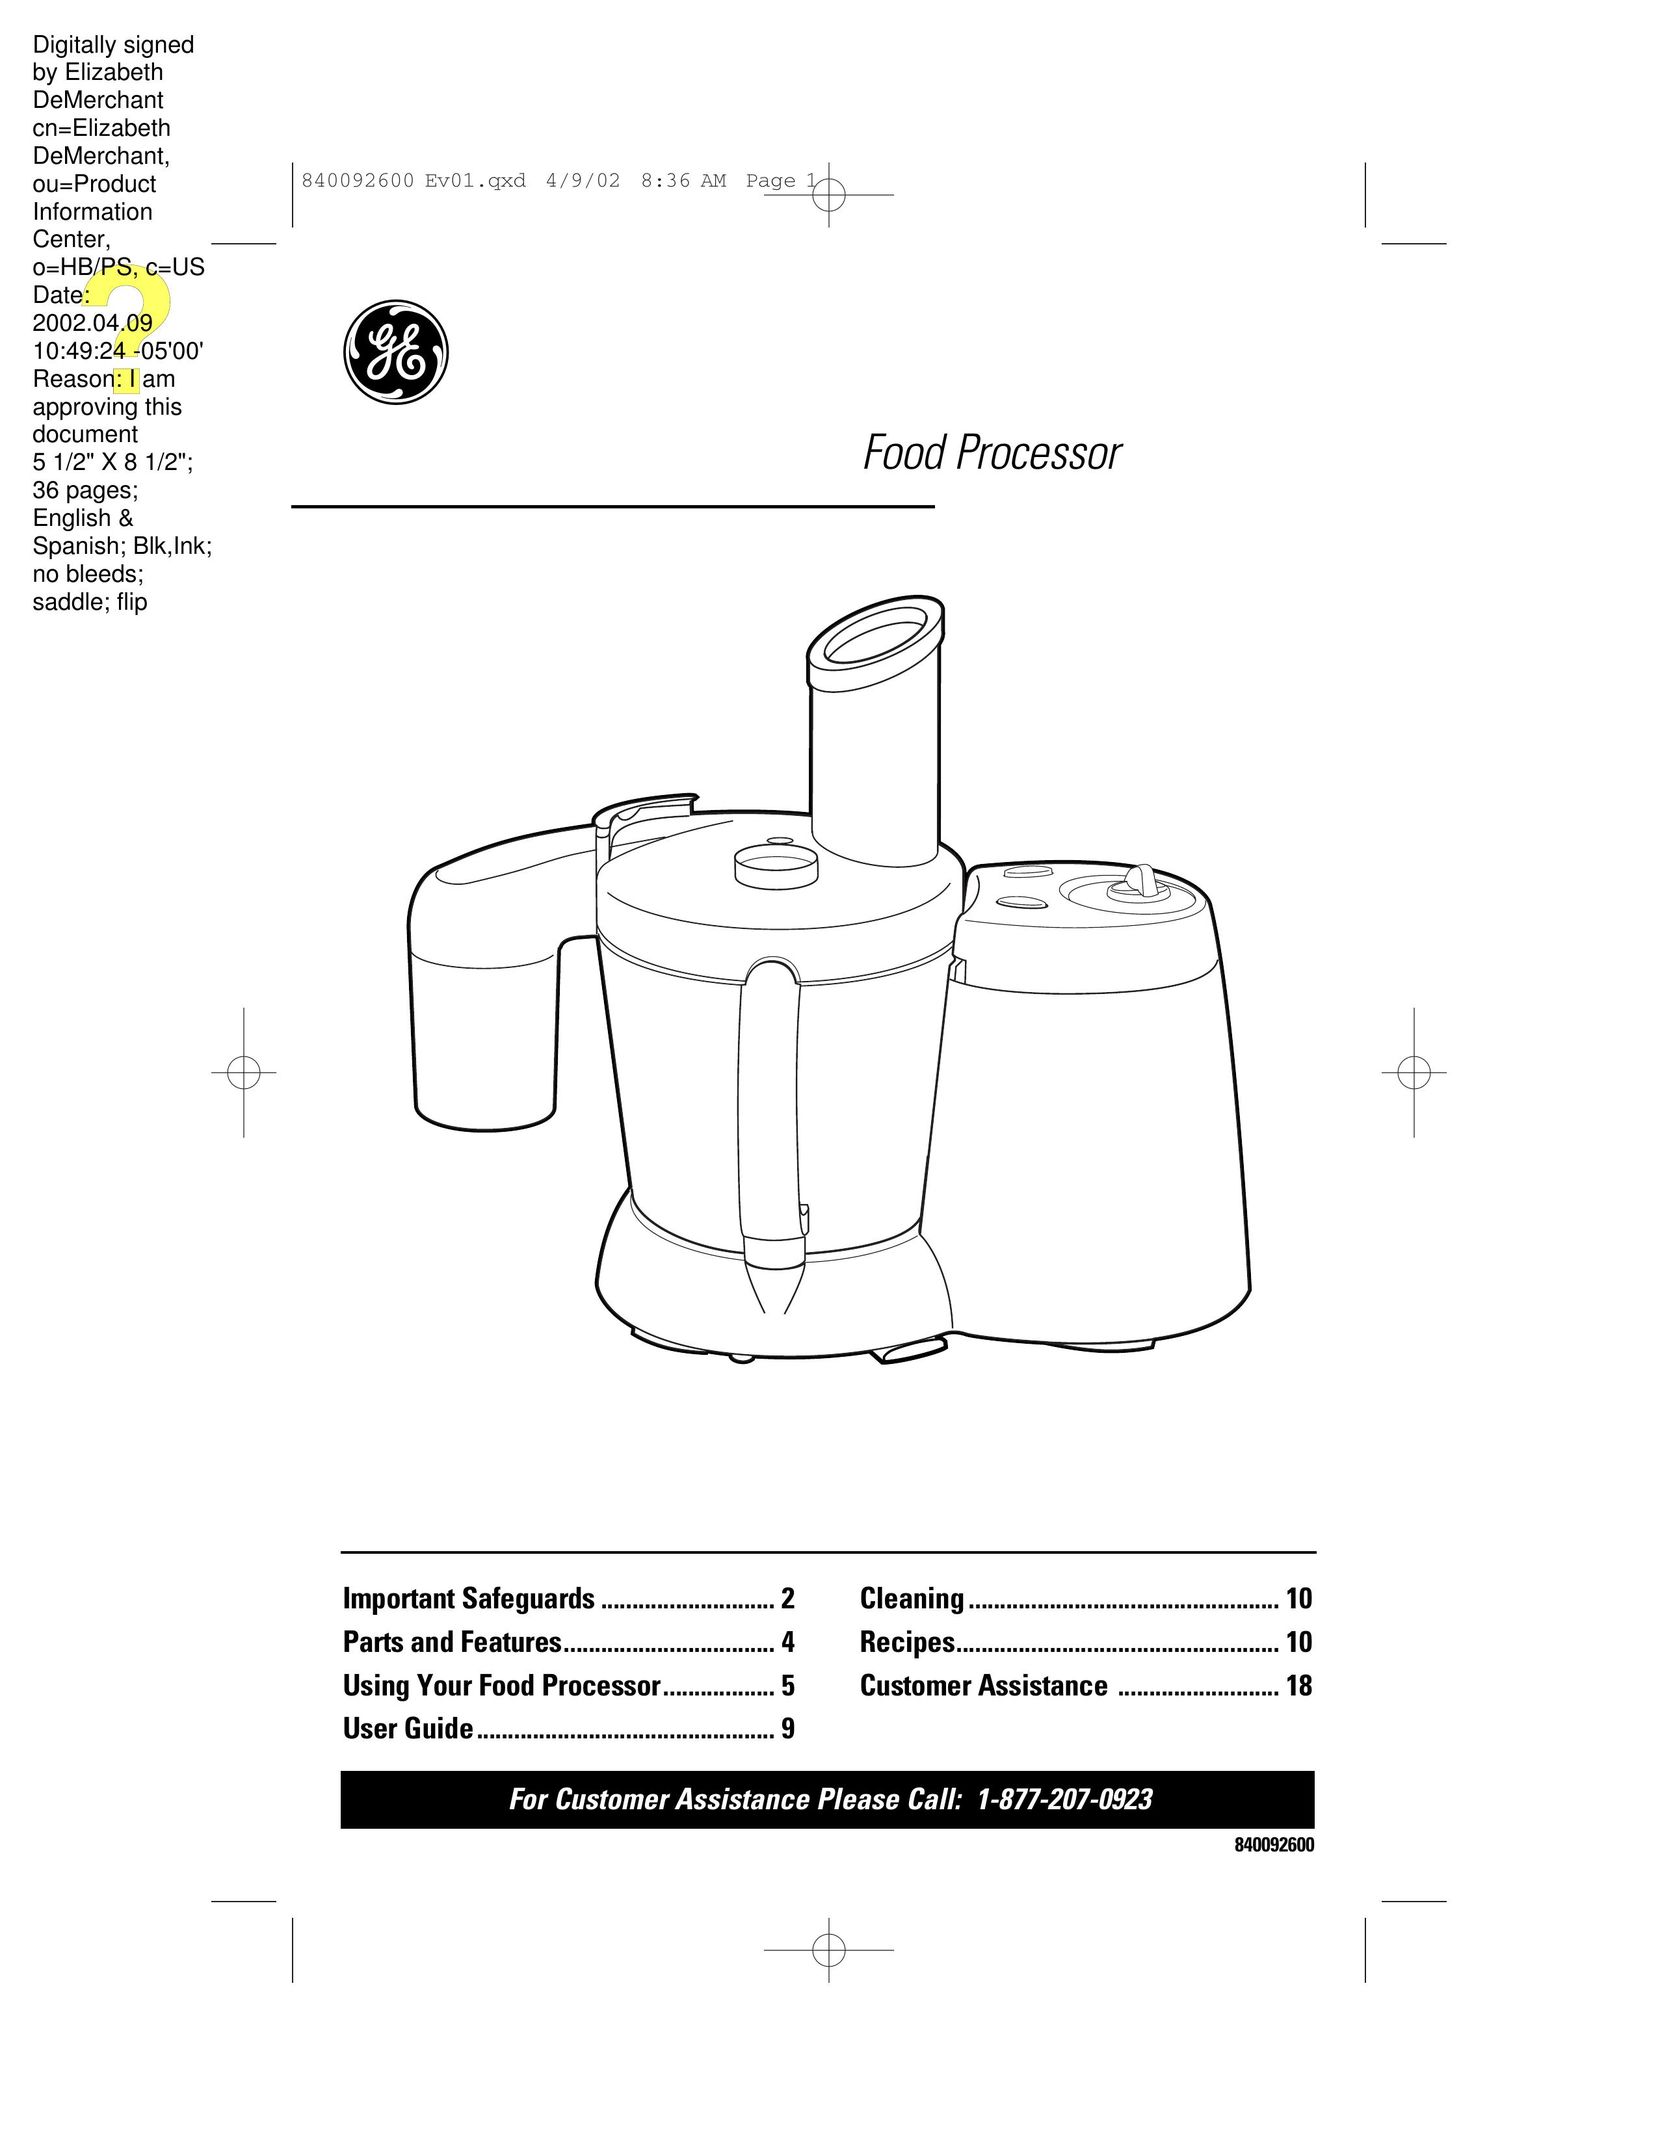 GE 840092600 Food Processor User Manual